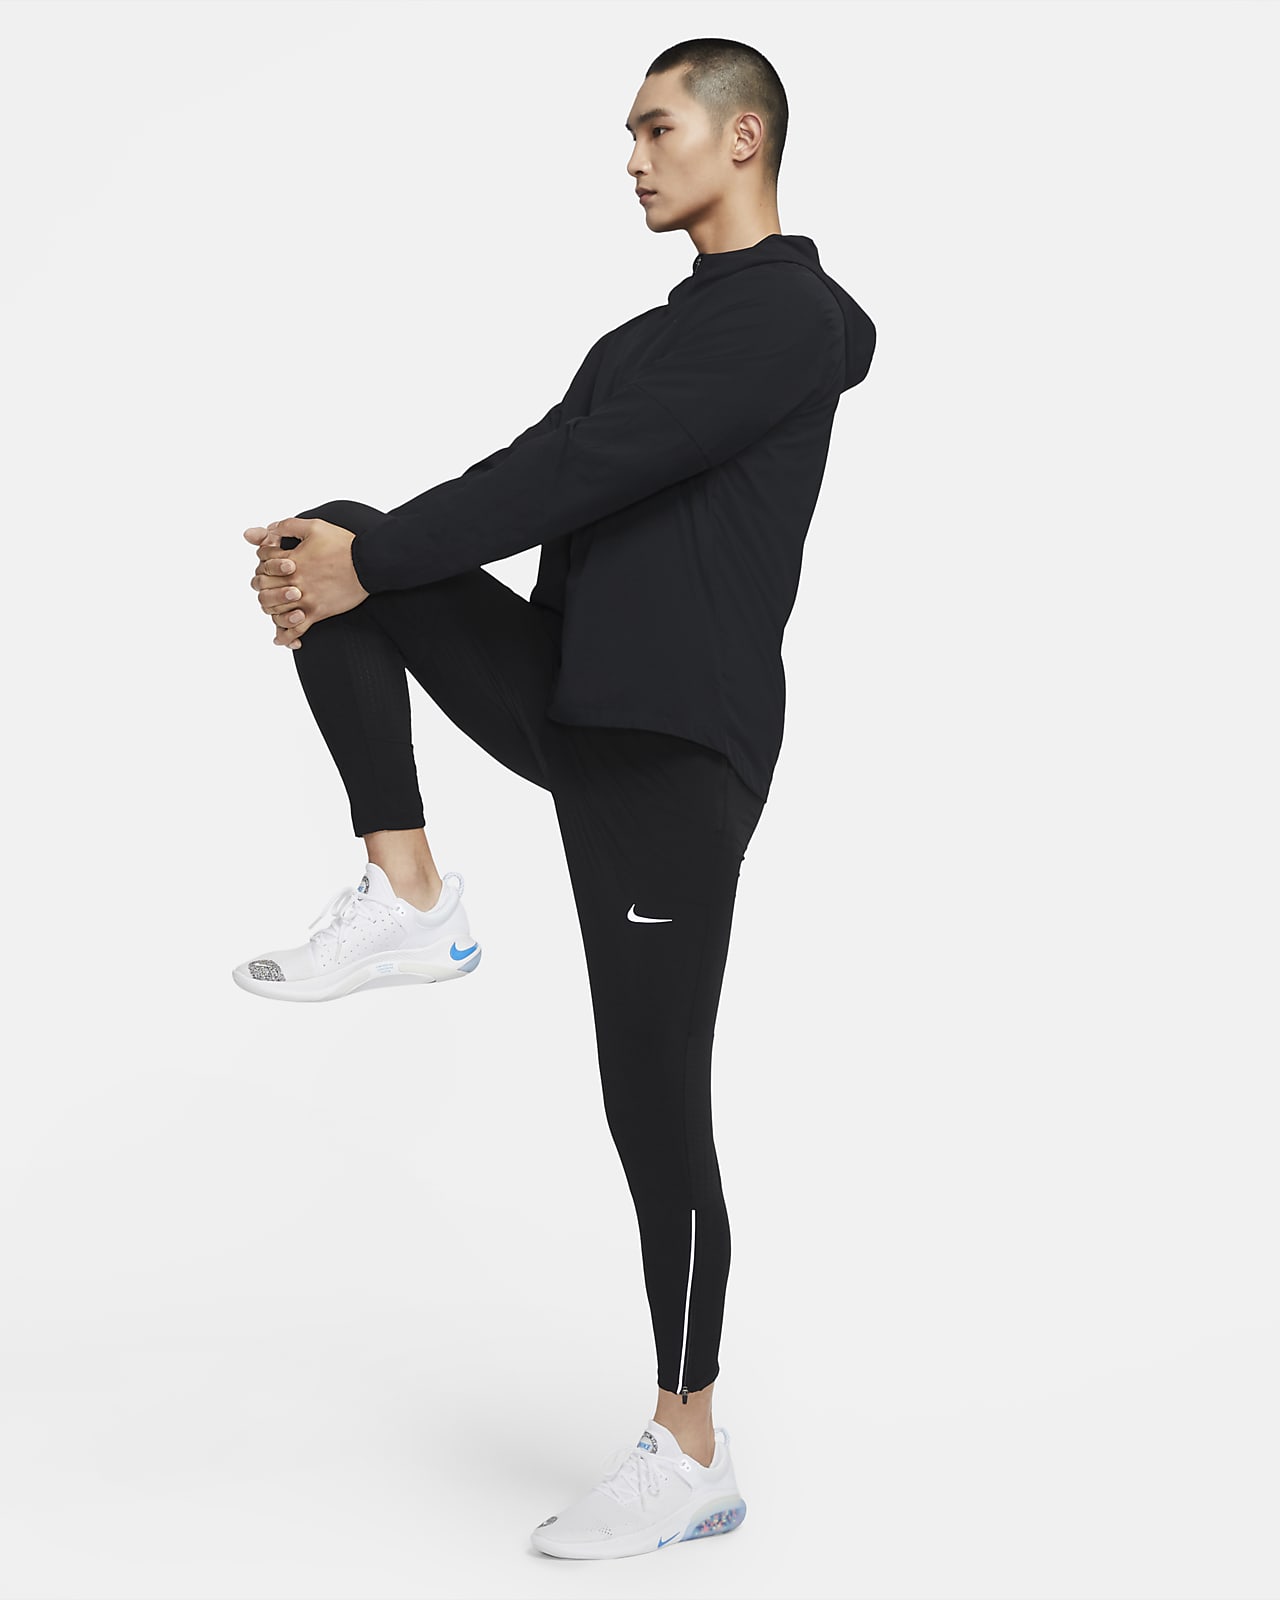 Nike Phenom Elite Men's Woven Running Trousers. Nike CH